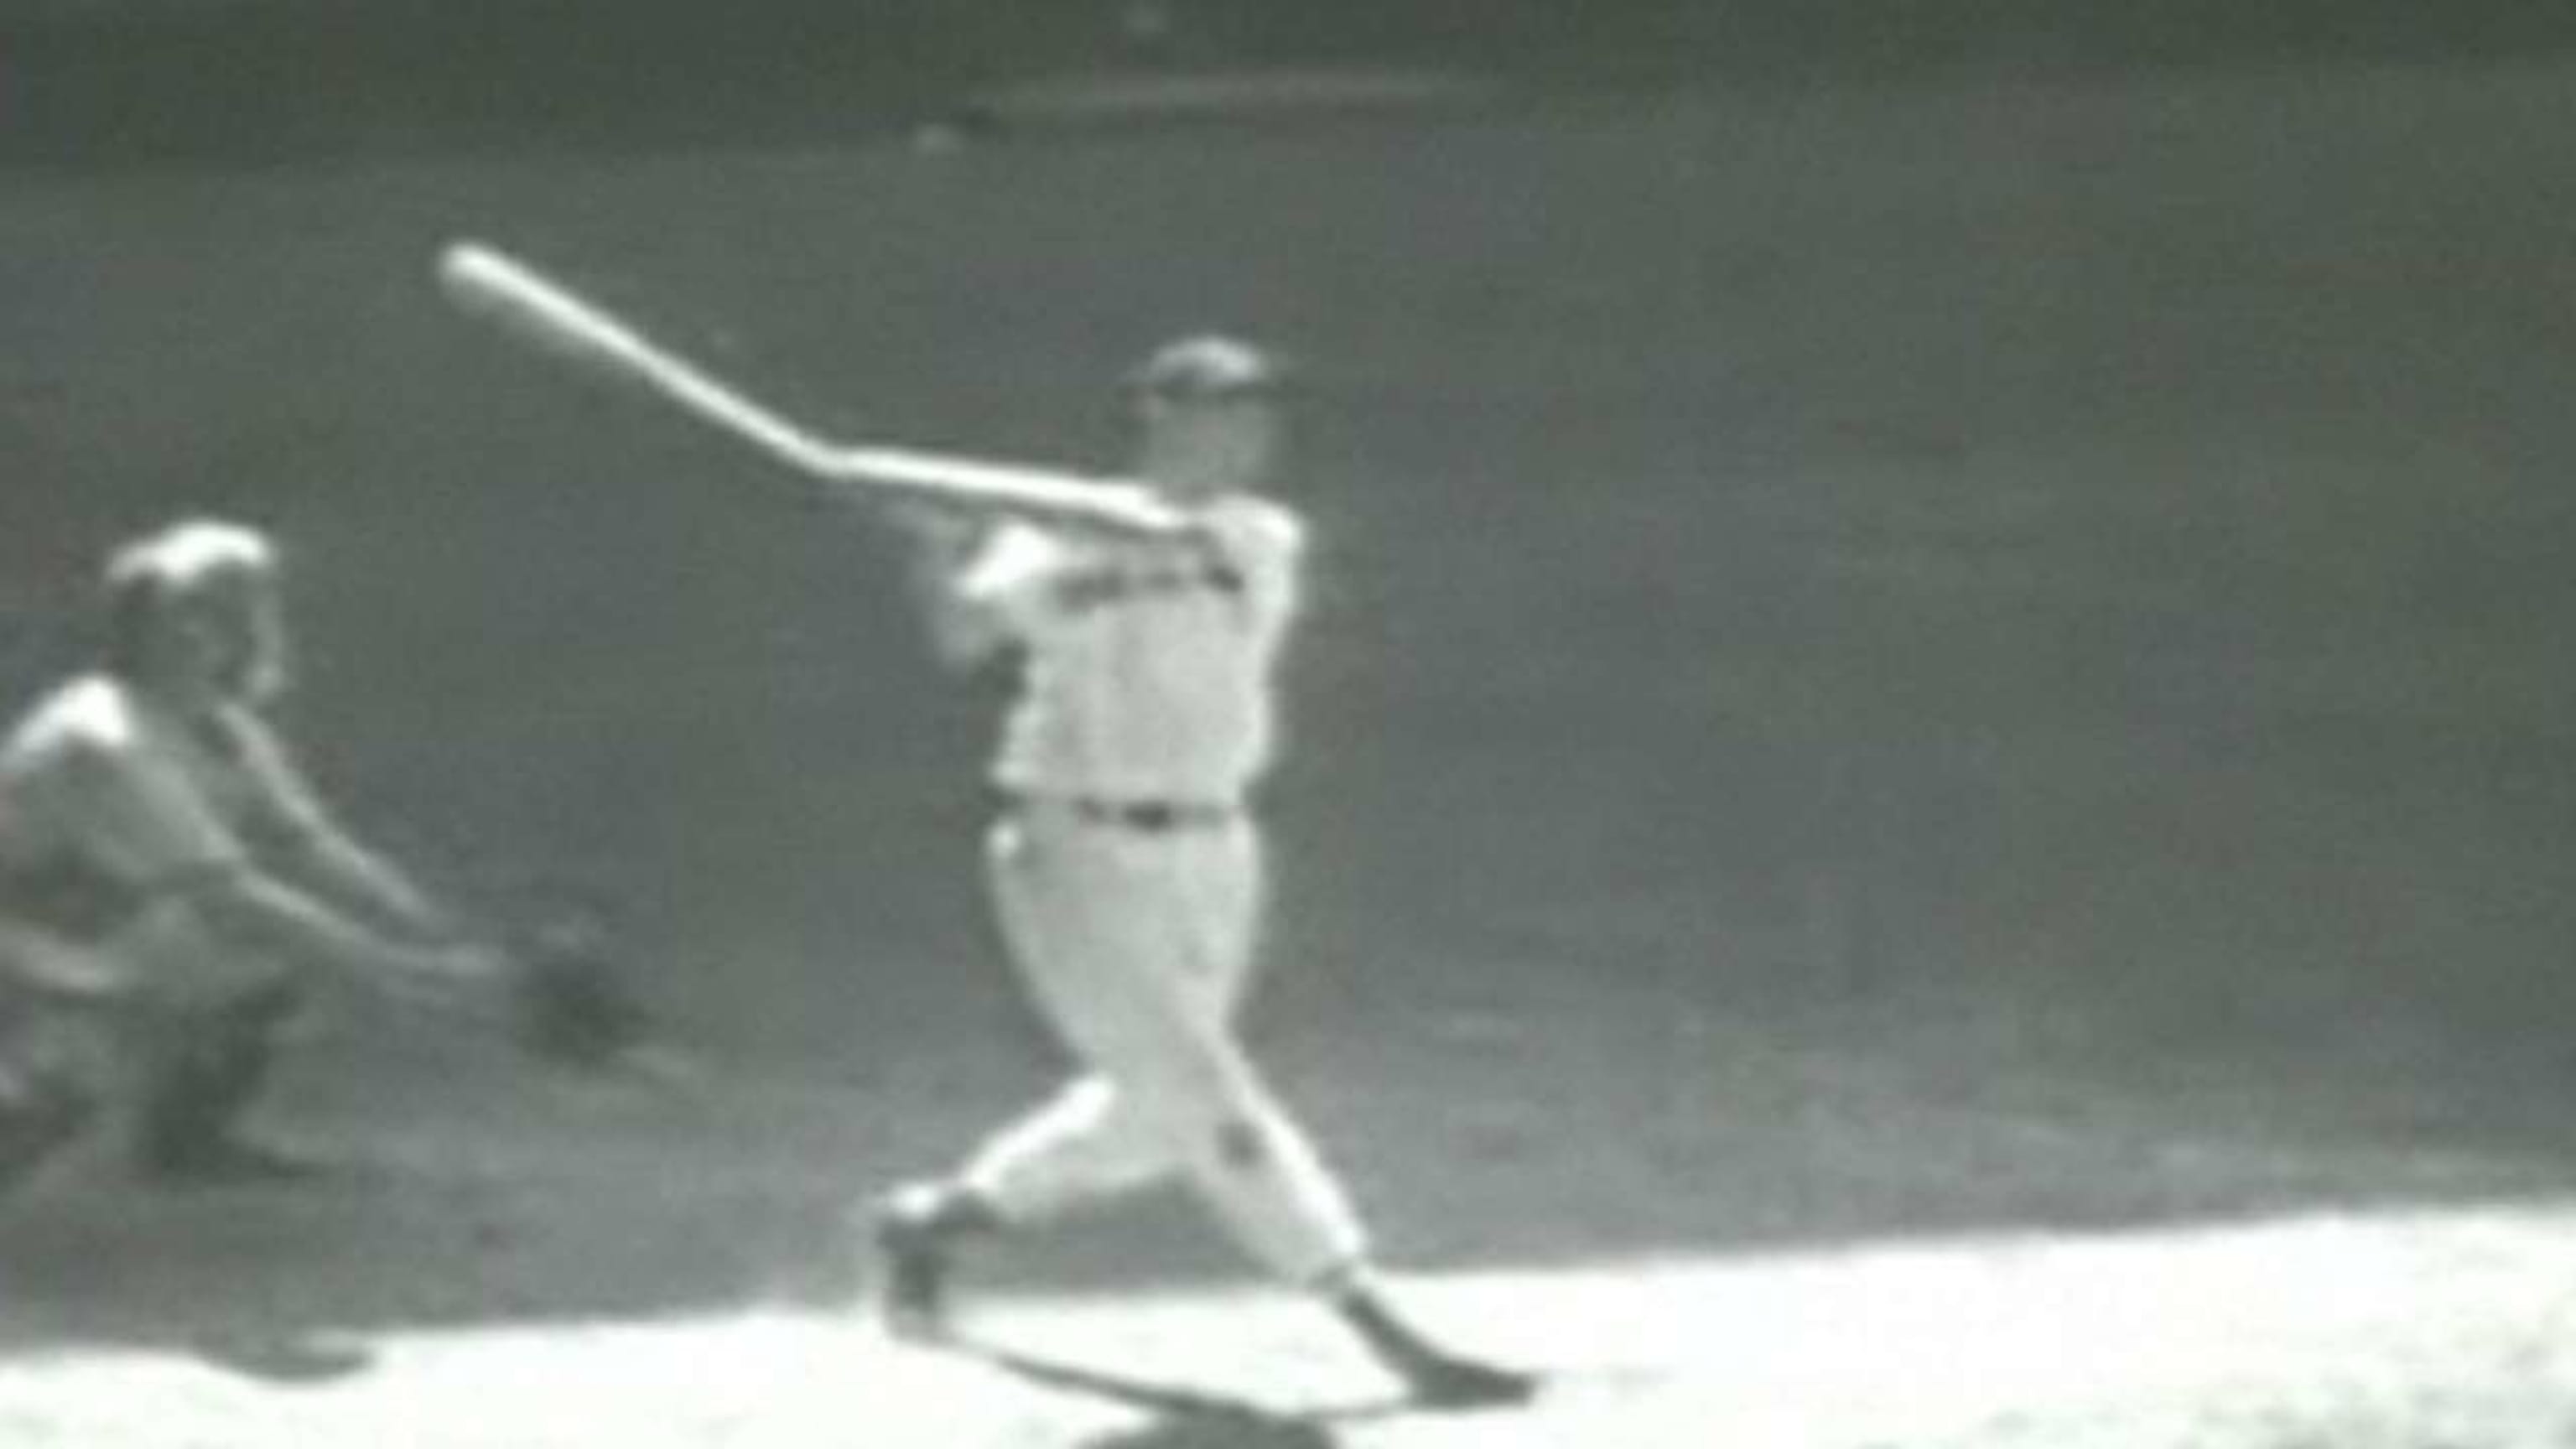 Baseballer - Ken Griffey Jr. The sweetest swing ever.